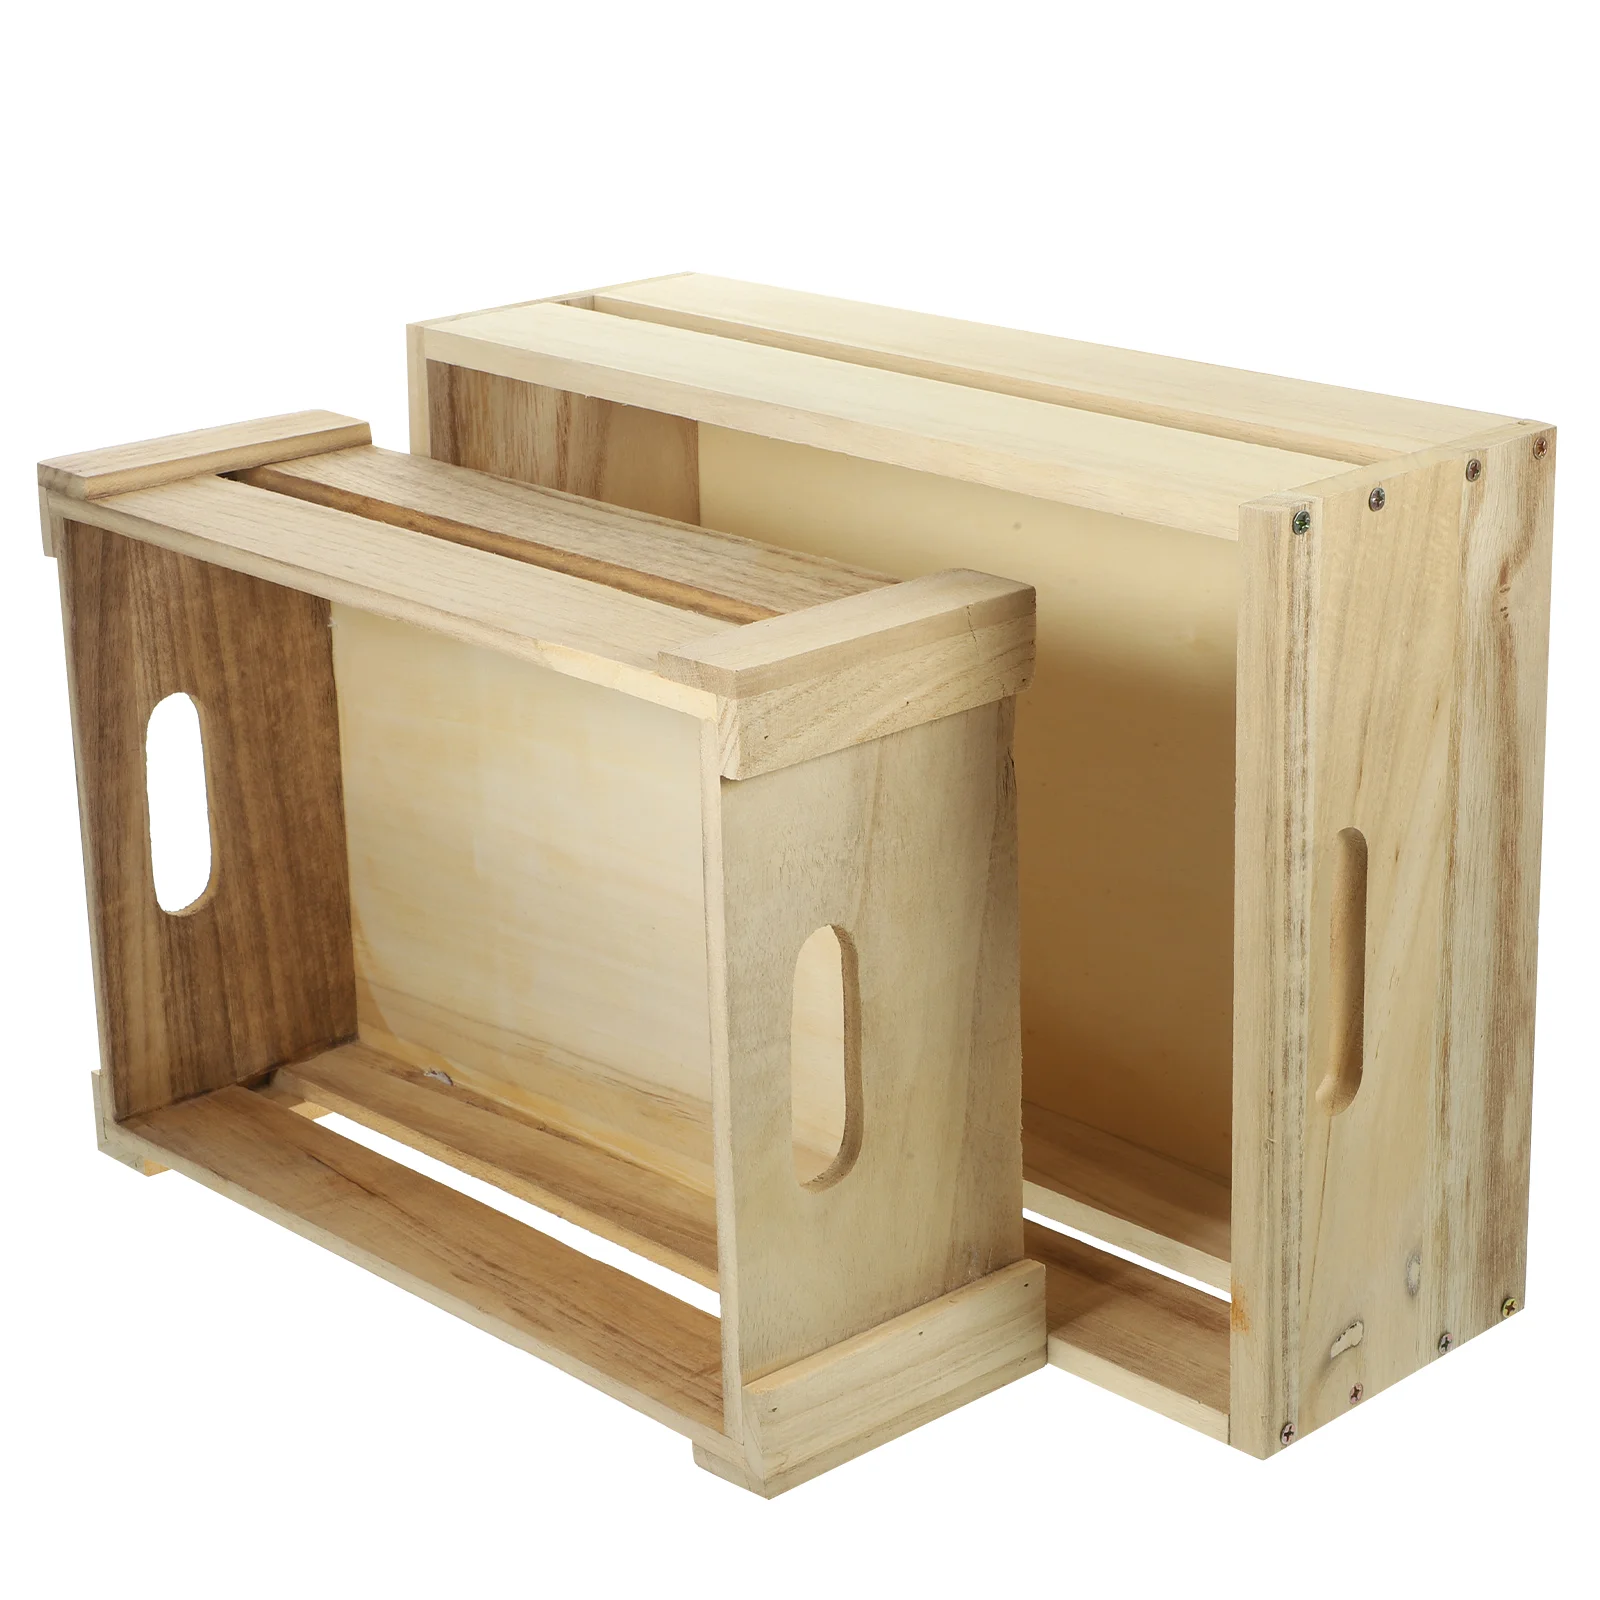 Фермерская Деревянная корзина Для организации дома, Декоративный ящик, Настольный Шкаф для хранения овощей 0